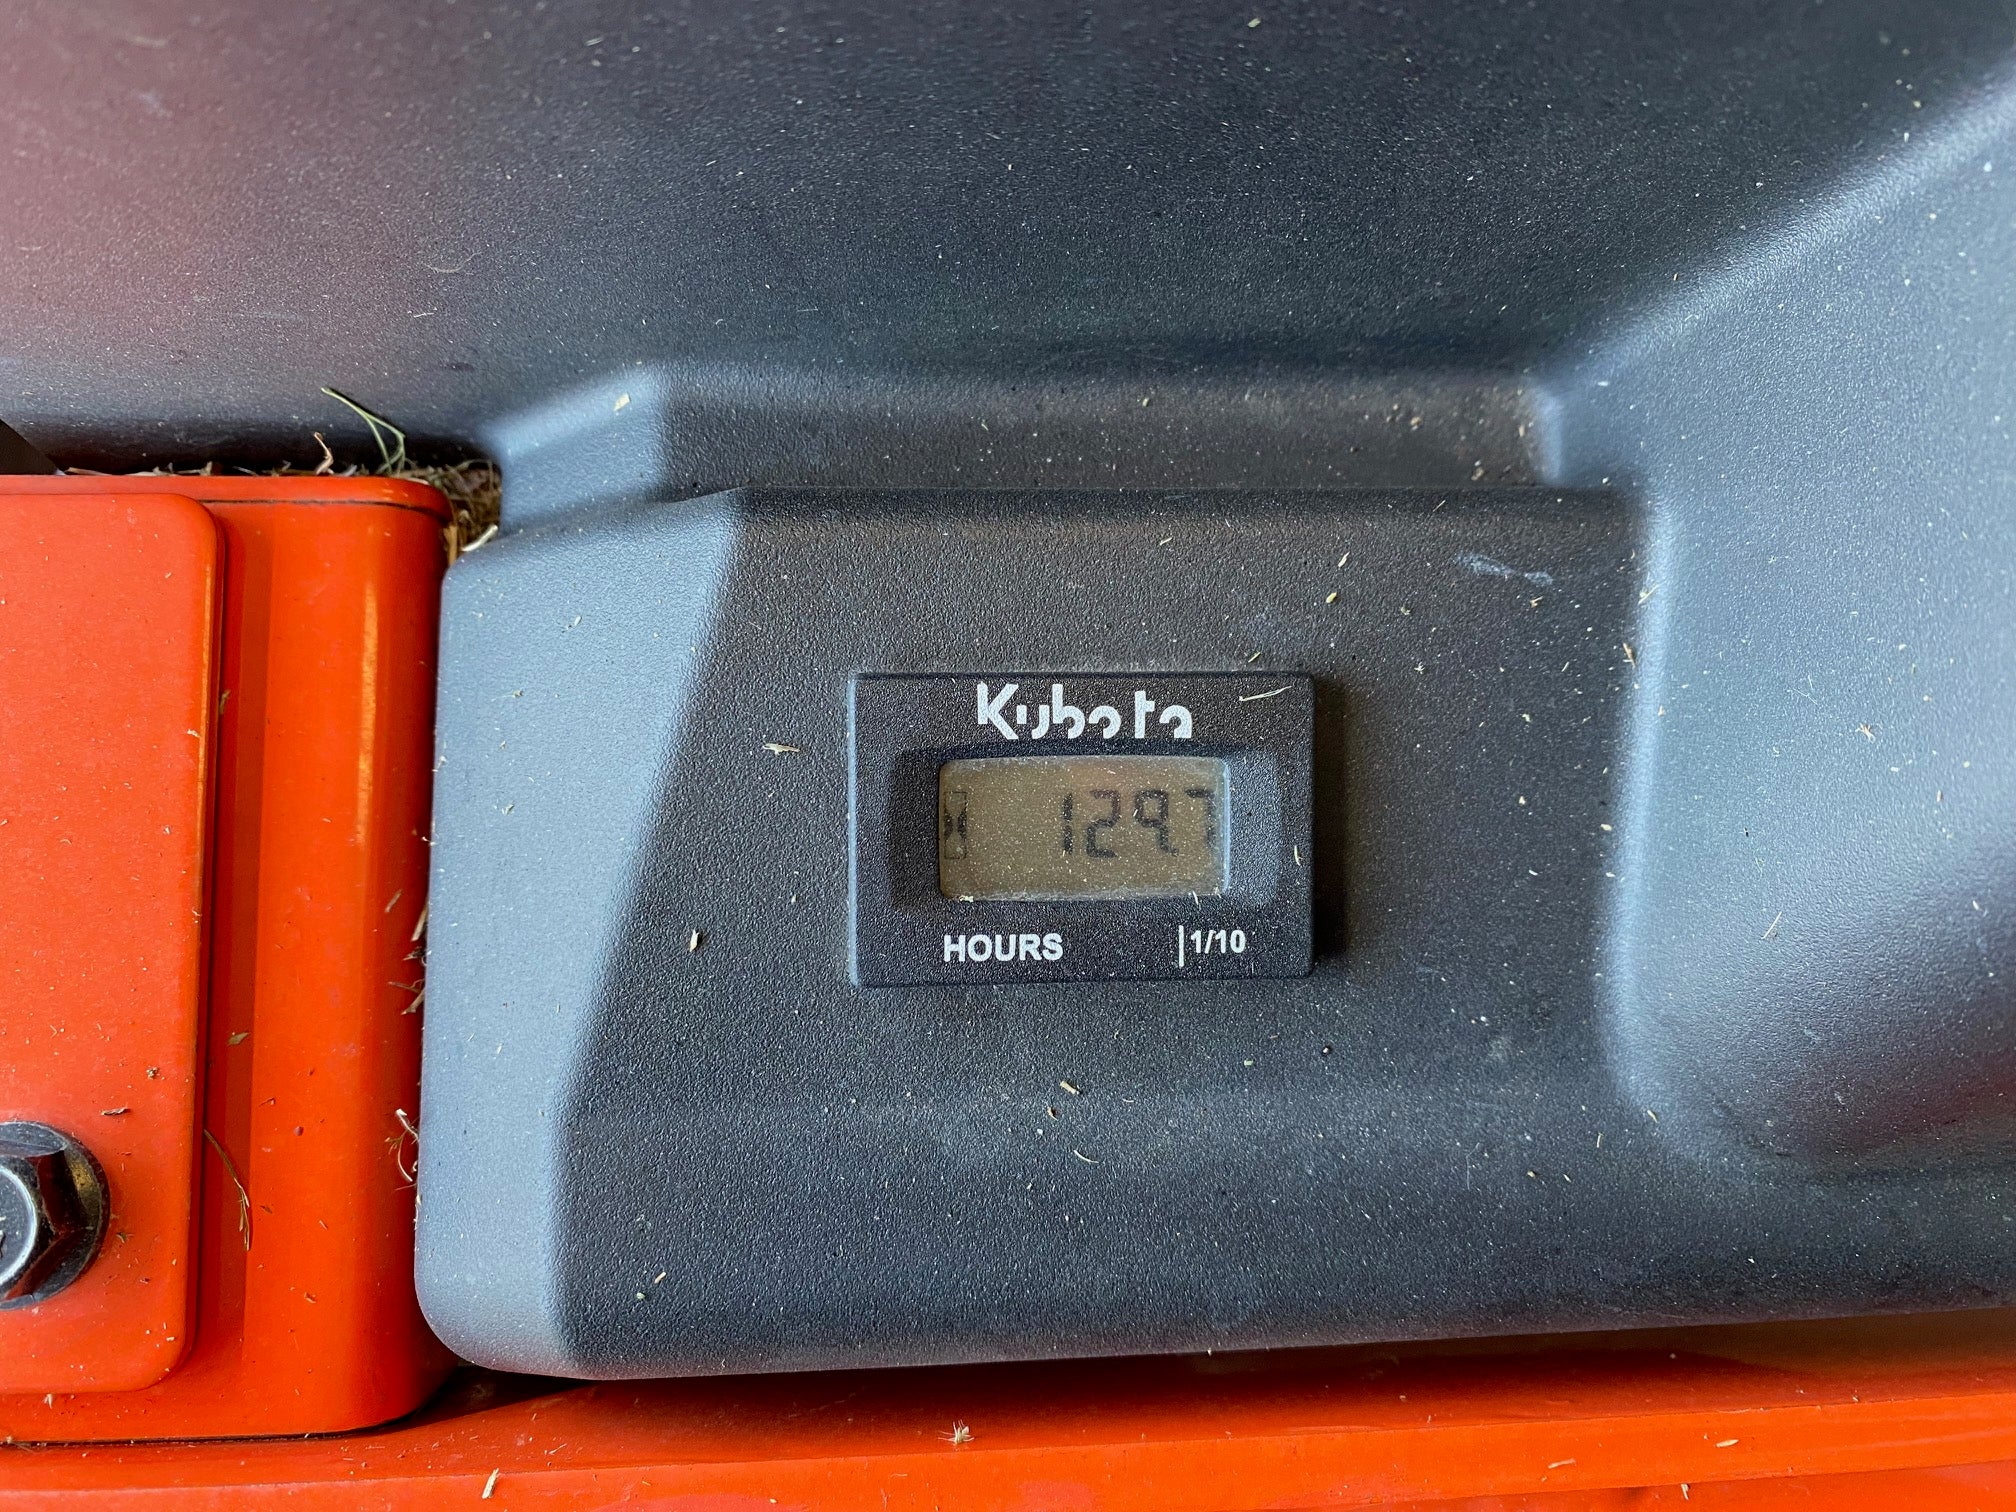 Kubota Kommander Pro Z411 48" Zero Turn Mower - USED